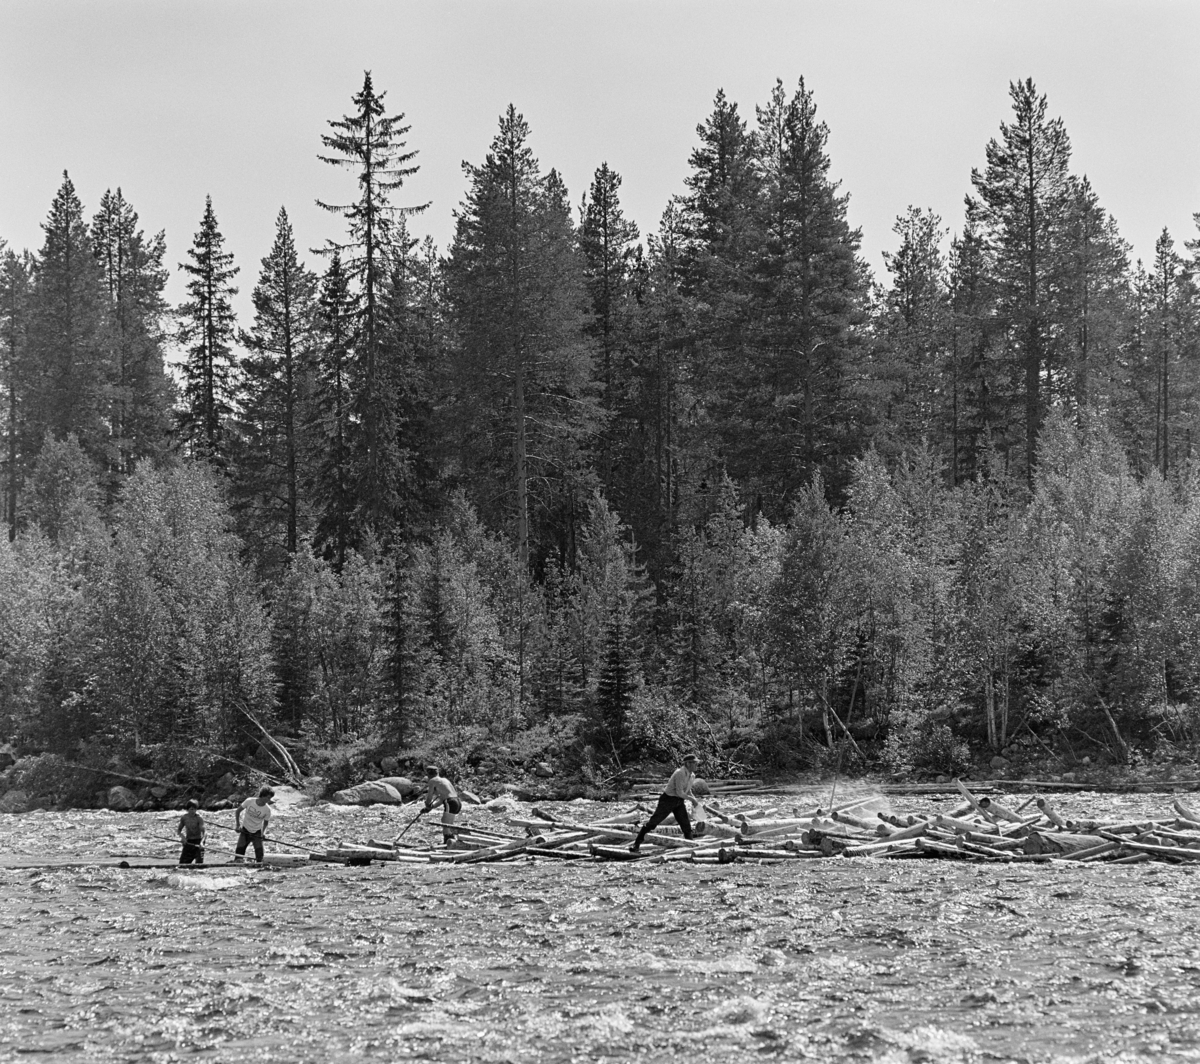 Fra tømmerfløtinga i Trysilelva i juni 1978.  Bildet er tatt på tvers av elveløpet, hvor det hadde satt seg fast en del tømmer (slipvirke), antakelig i et grunt parti i ellers hurtigstrømmende vann.  Da dette fotografiet ble tatt arbeidet fire sommerlig antrukne fløtere med å løsne stokkene på den nedre delen av haugen. Karene var (fra venstre) Kjetil Olager fra Innbygda i Trysil, Bjørn Graff, Einar Liberg og Ole K. Rømoen, de tre siste fra Jordet i Trysil. På motsatt elvebredd vokste det småskog, med et eldre blandingsbestand av furu og gran i bakgrunnen.

I 1978 skal det ha vært innmeldt 70 699 kubikkmeter tømmer til fløting i Trysilelva.  Tømmeret gikk til svenske kjøpere, som til sammen skal ha mottatt 112 463 fra Trysilvassdragets nedslagsfelt.  Differensen mellom de to tallene må antakelig ha vært virke som ble transportert over riksgrensa på lastebiler.   I 1978 sysselsatte Klarälvens flottningsförening 27-28 sesongarbeidere med fløting på norsk side av grensa.  Mange av disse var veteraner, men fløtingsledelsen var opptatt av å rekruttere yngre aktører også, med sikte på at fløtinga i Trysil skulle fortsette sjøl om den ble nedlagt i mange andre vassdrag.  Langs Trysilvassdraget var det stor interesse for slikt arbeid. Fløting.